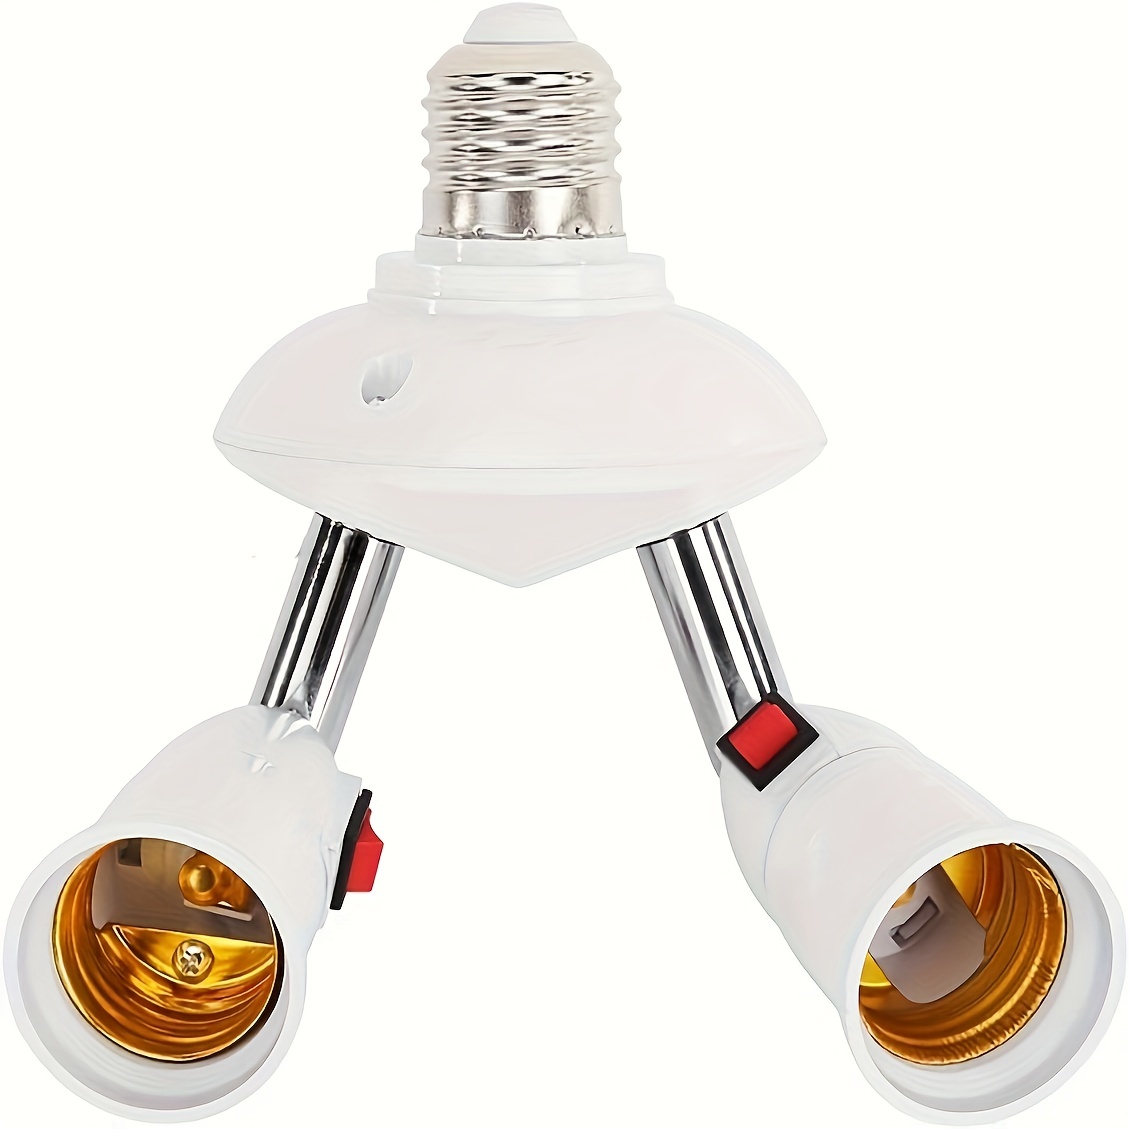 Plafond Vintage Solide 1Pc E27 Douille D'ampoule Moderne, Support D'ampoule  De Lampe De Mur, Durable Pour L'éclairage De Maison Ou De Bureau Pour Les  Ampoules à Vis E27 